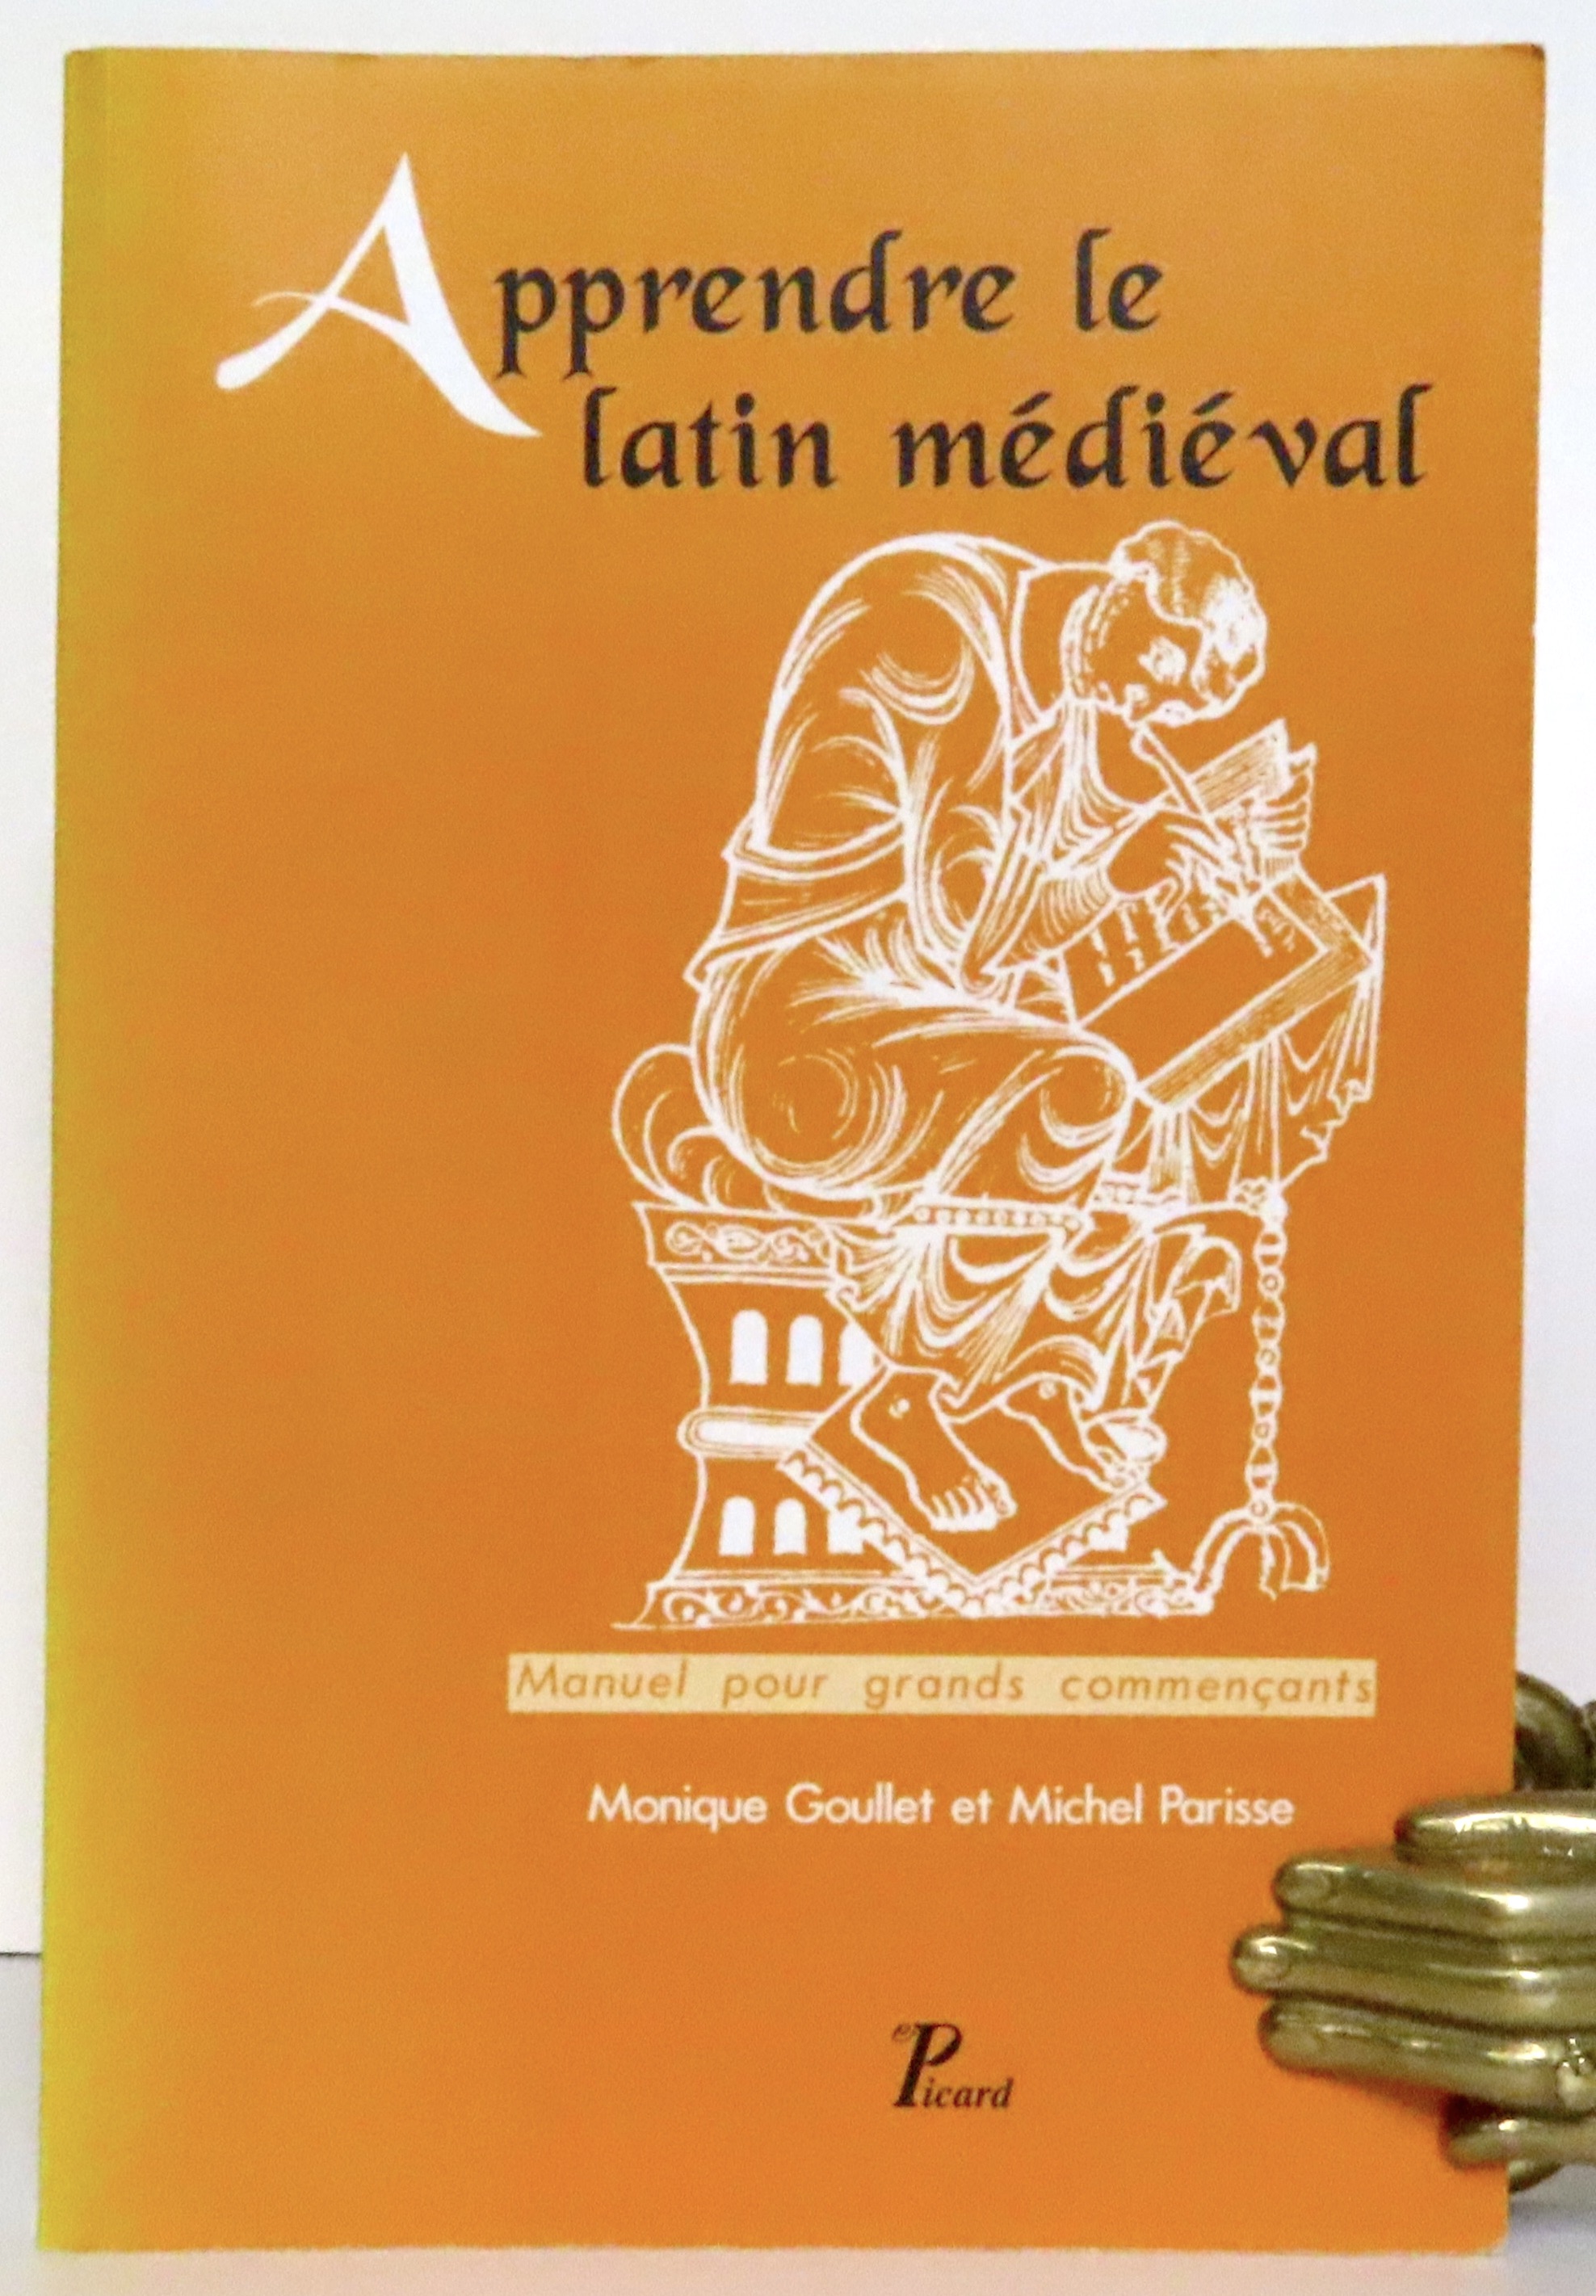 Manuel pour grands commençants Apprendre le latin médiéval 